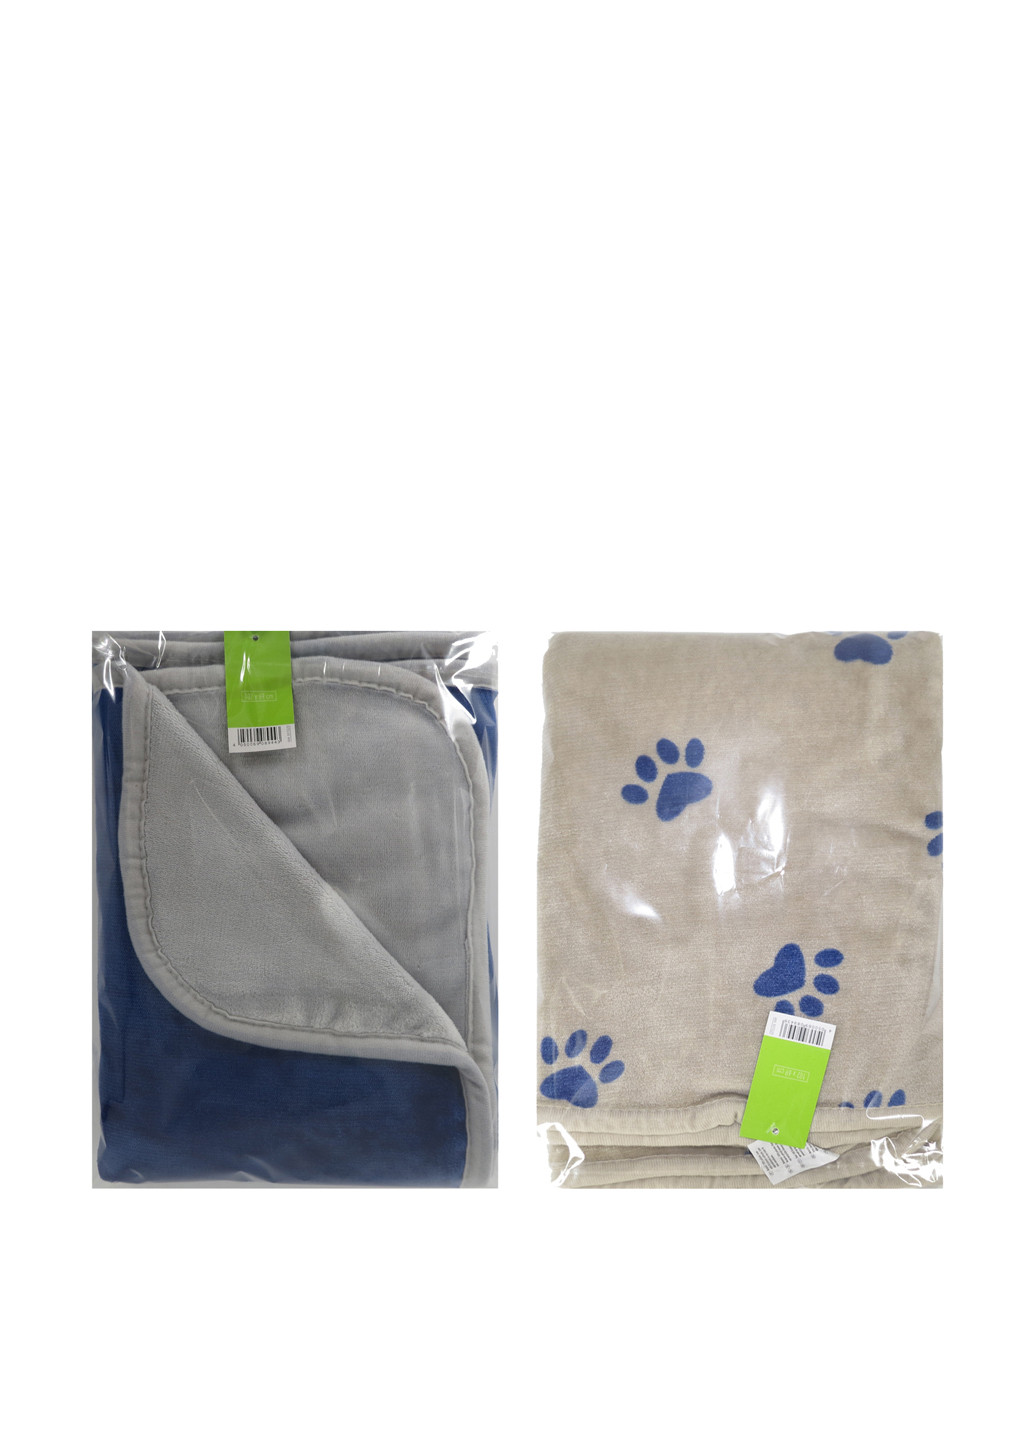 Zoofari полотенце, 100х70 см рисунок серый производство - Китай